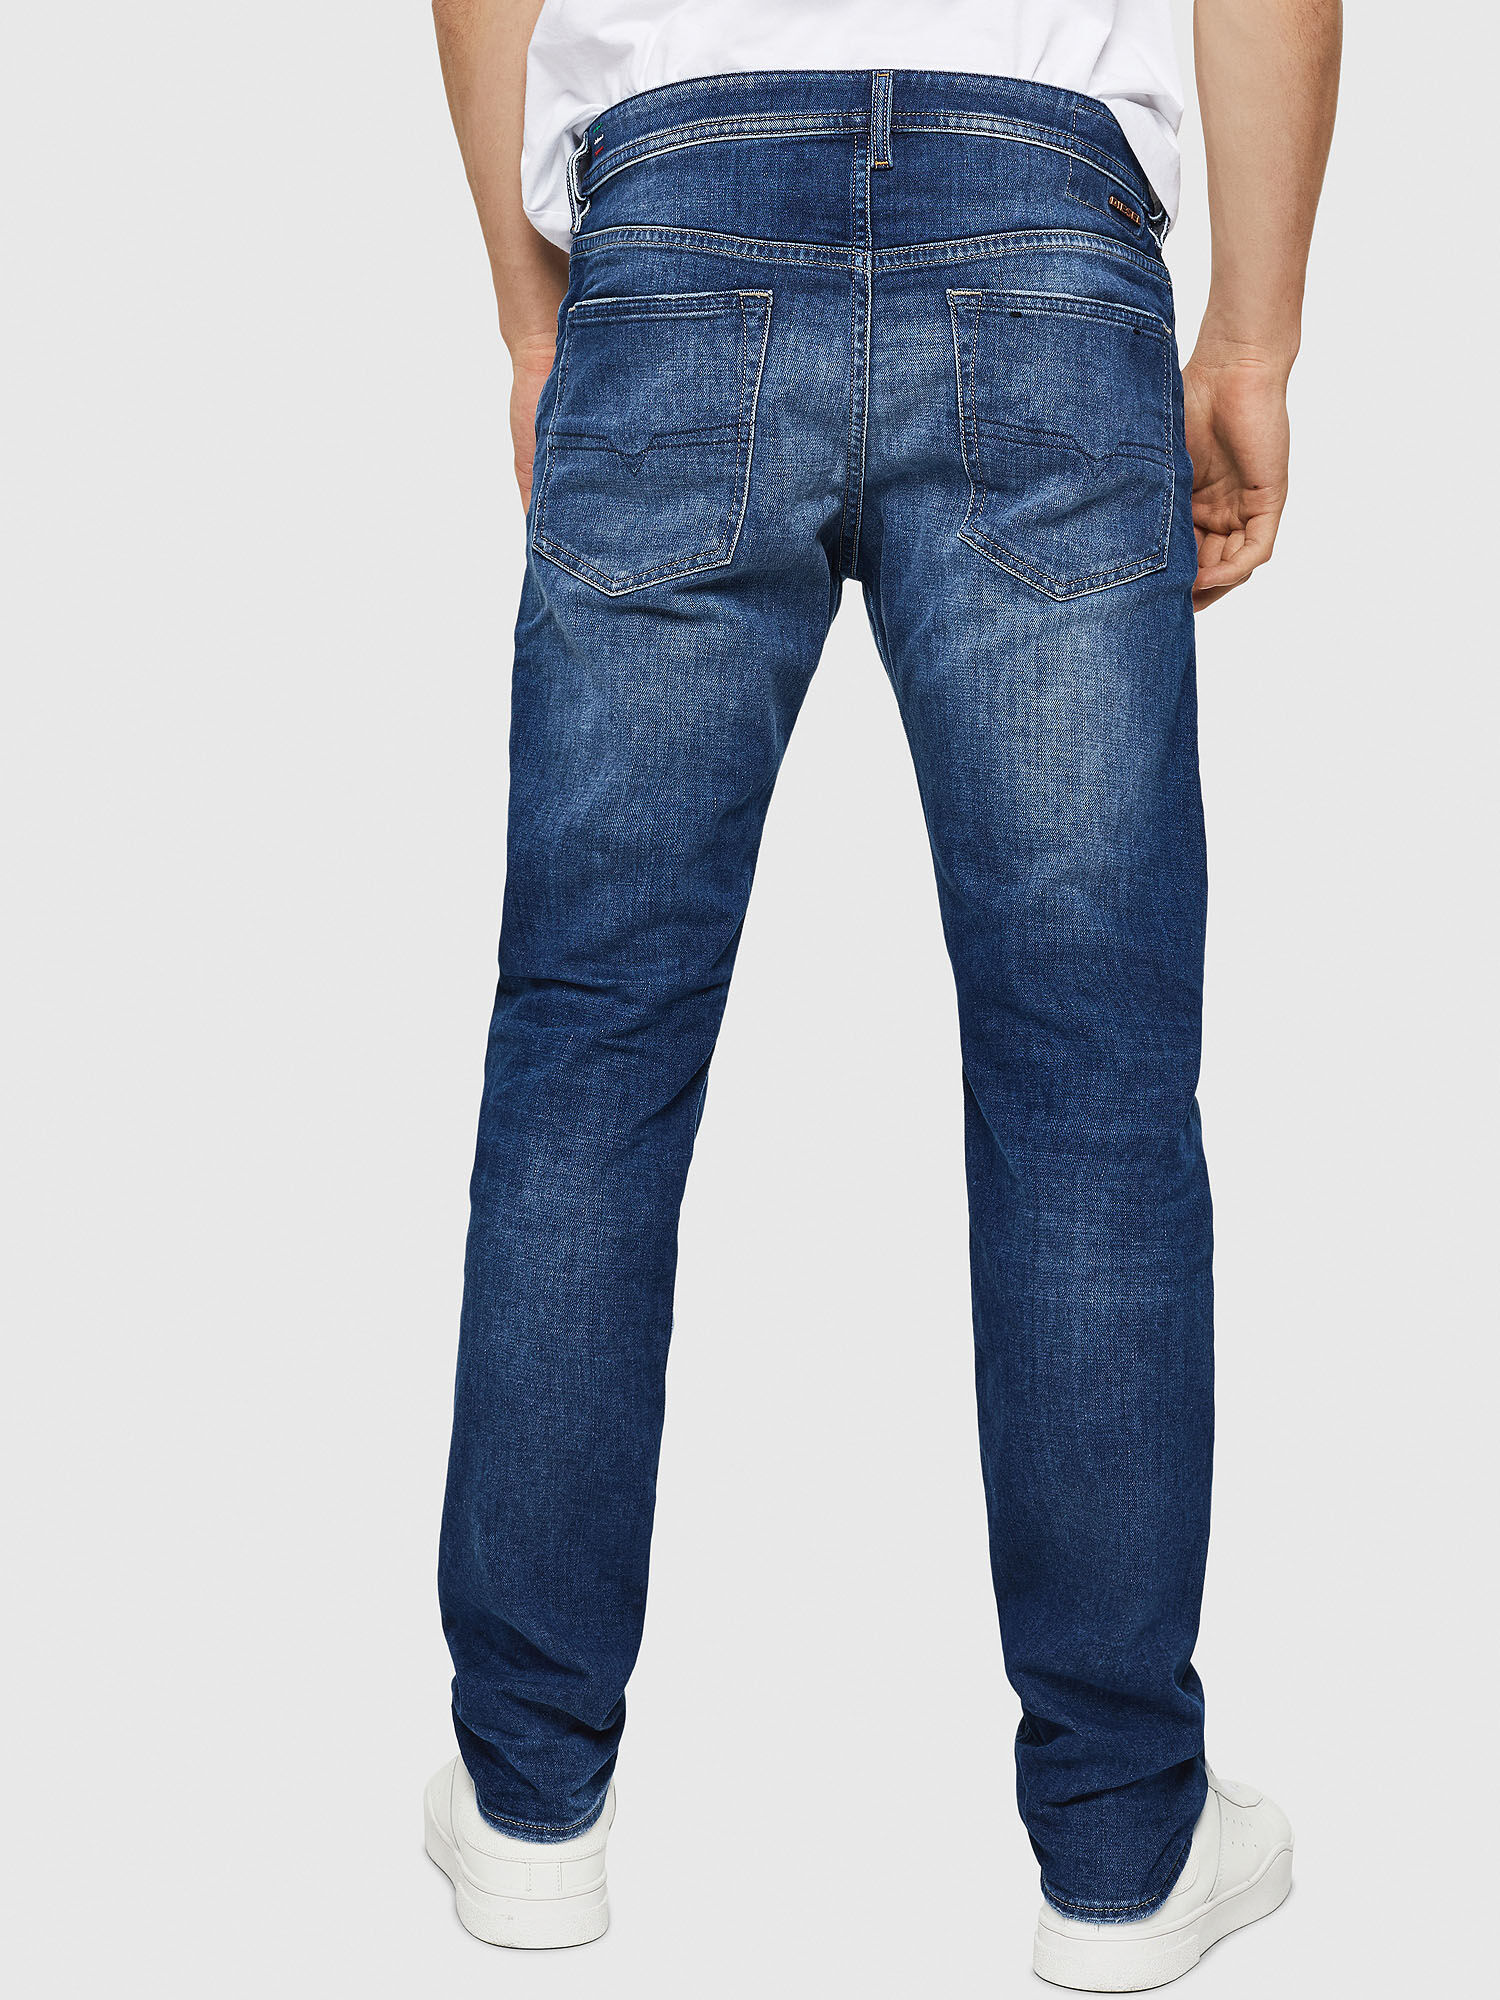 Buster Slim Jeans 084SZ: Medium Blue Wash, Treated, Stretch Fabric